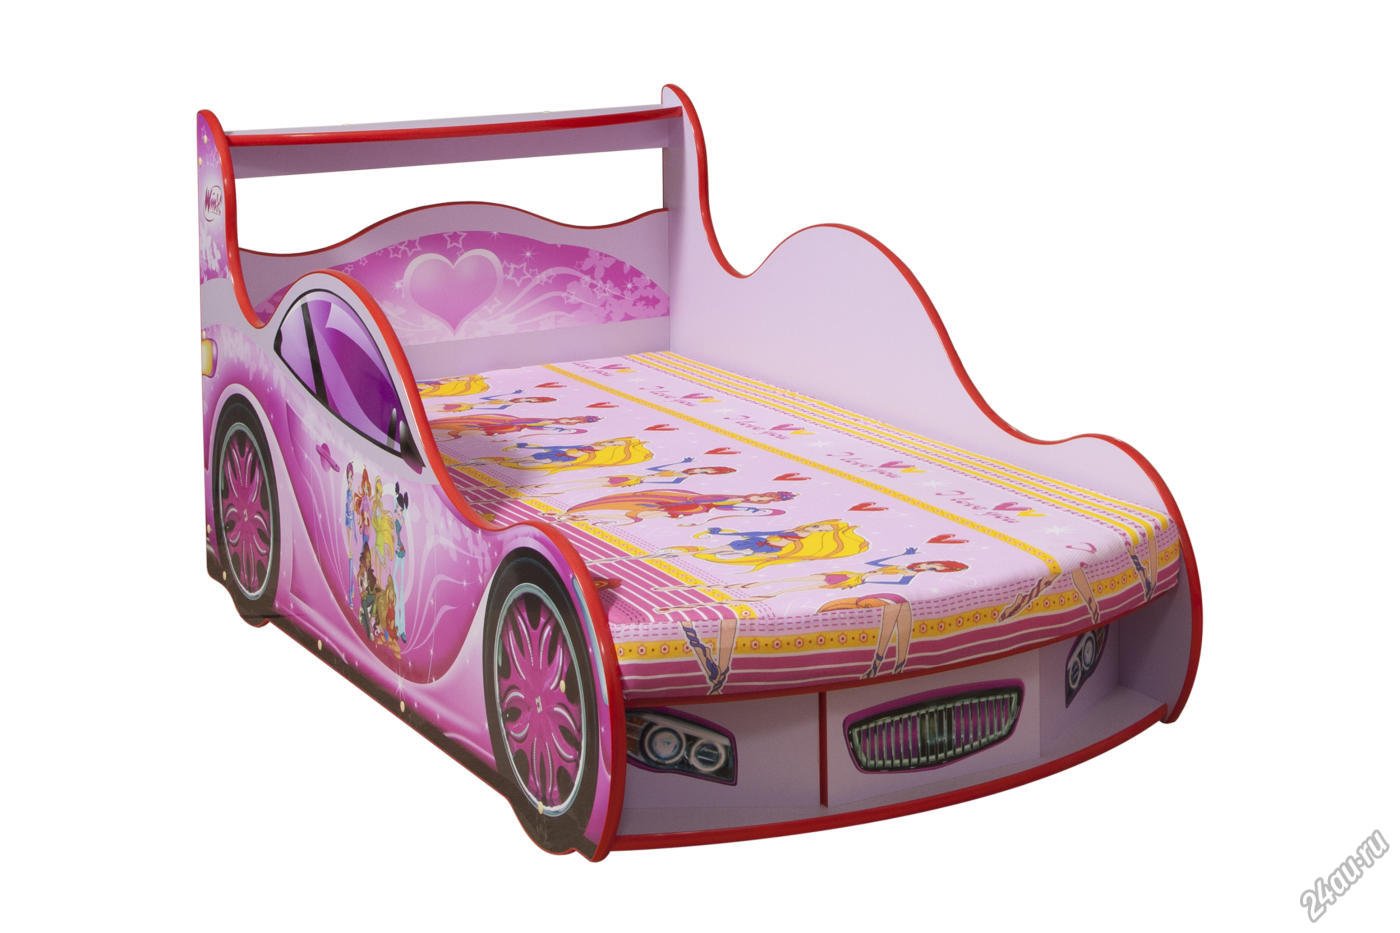 Купить машинку фея. Кровать с феями Винкс. Кровать машина феи Winx. Кровать машинка Винкс. Кровать машинка для девочки Винкс.